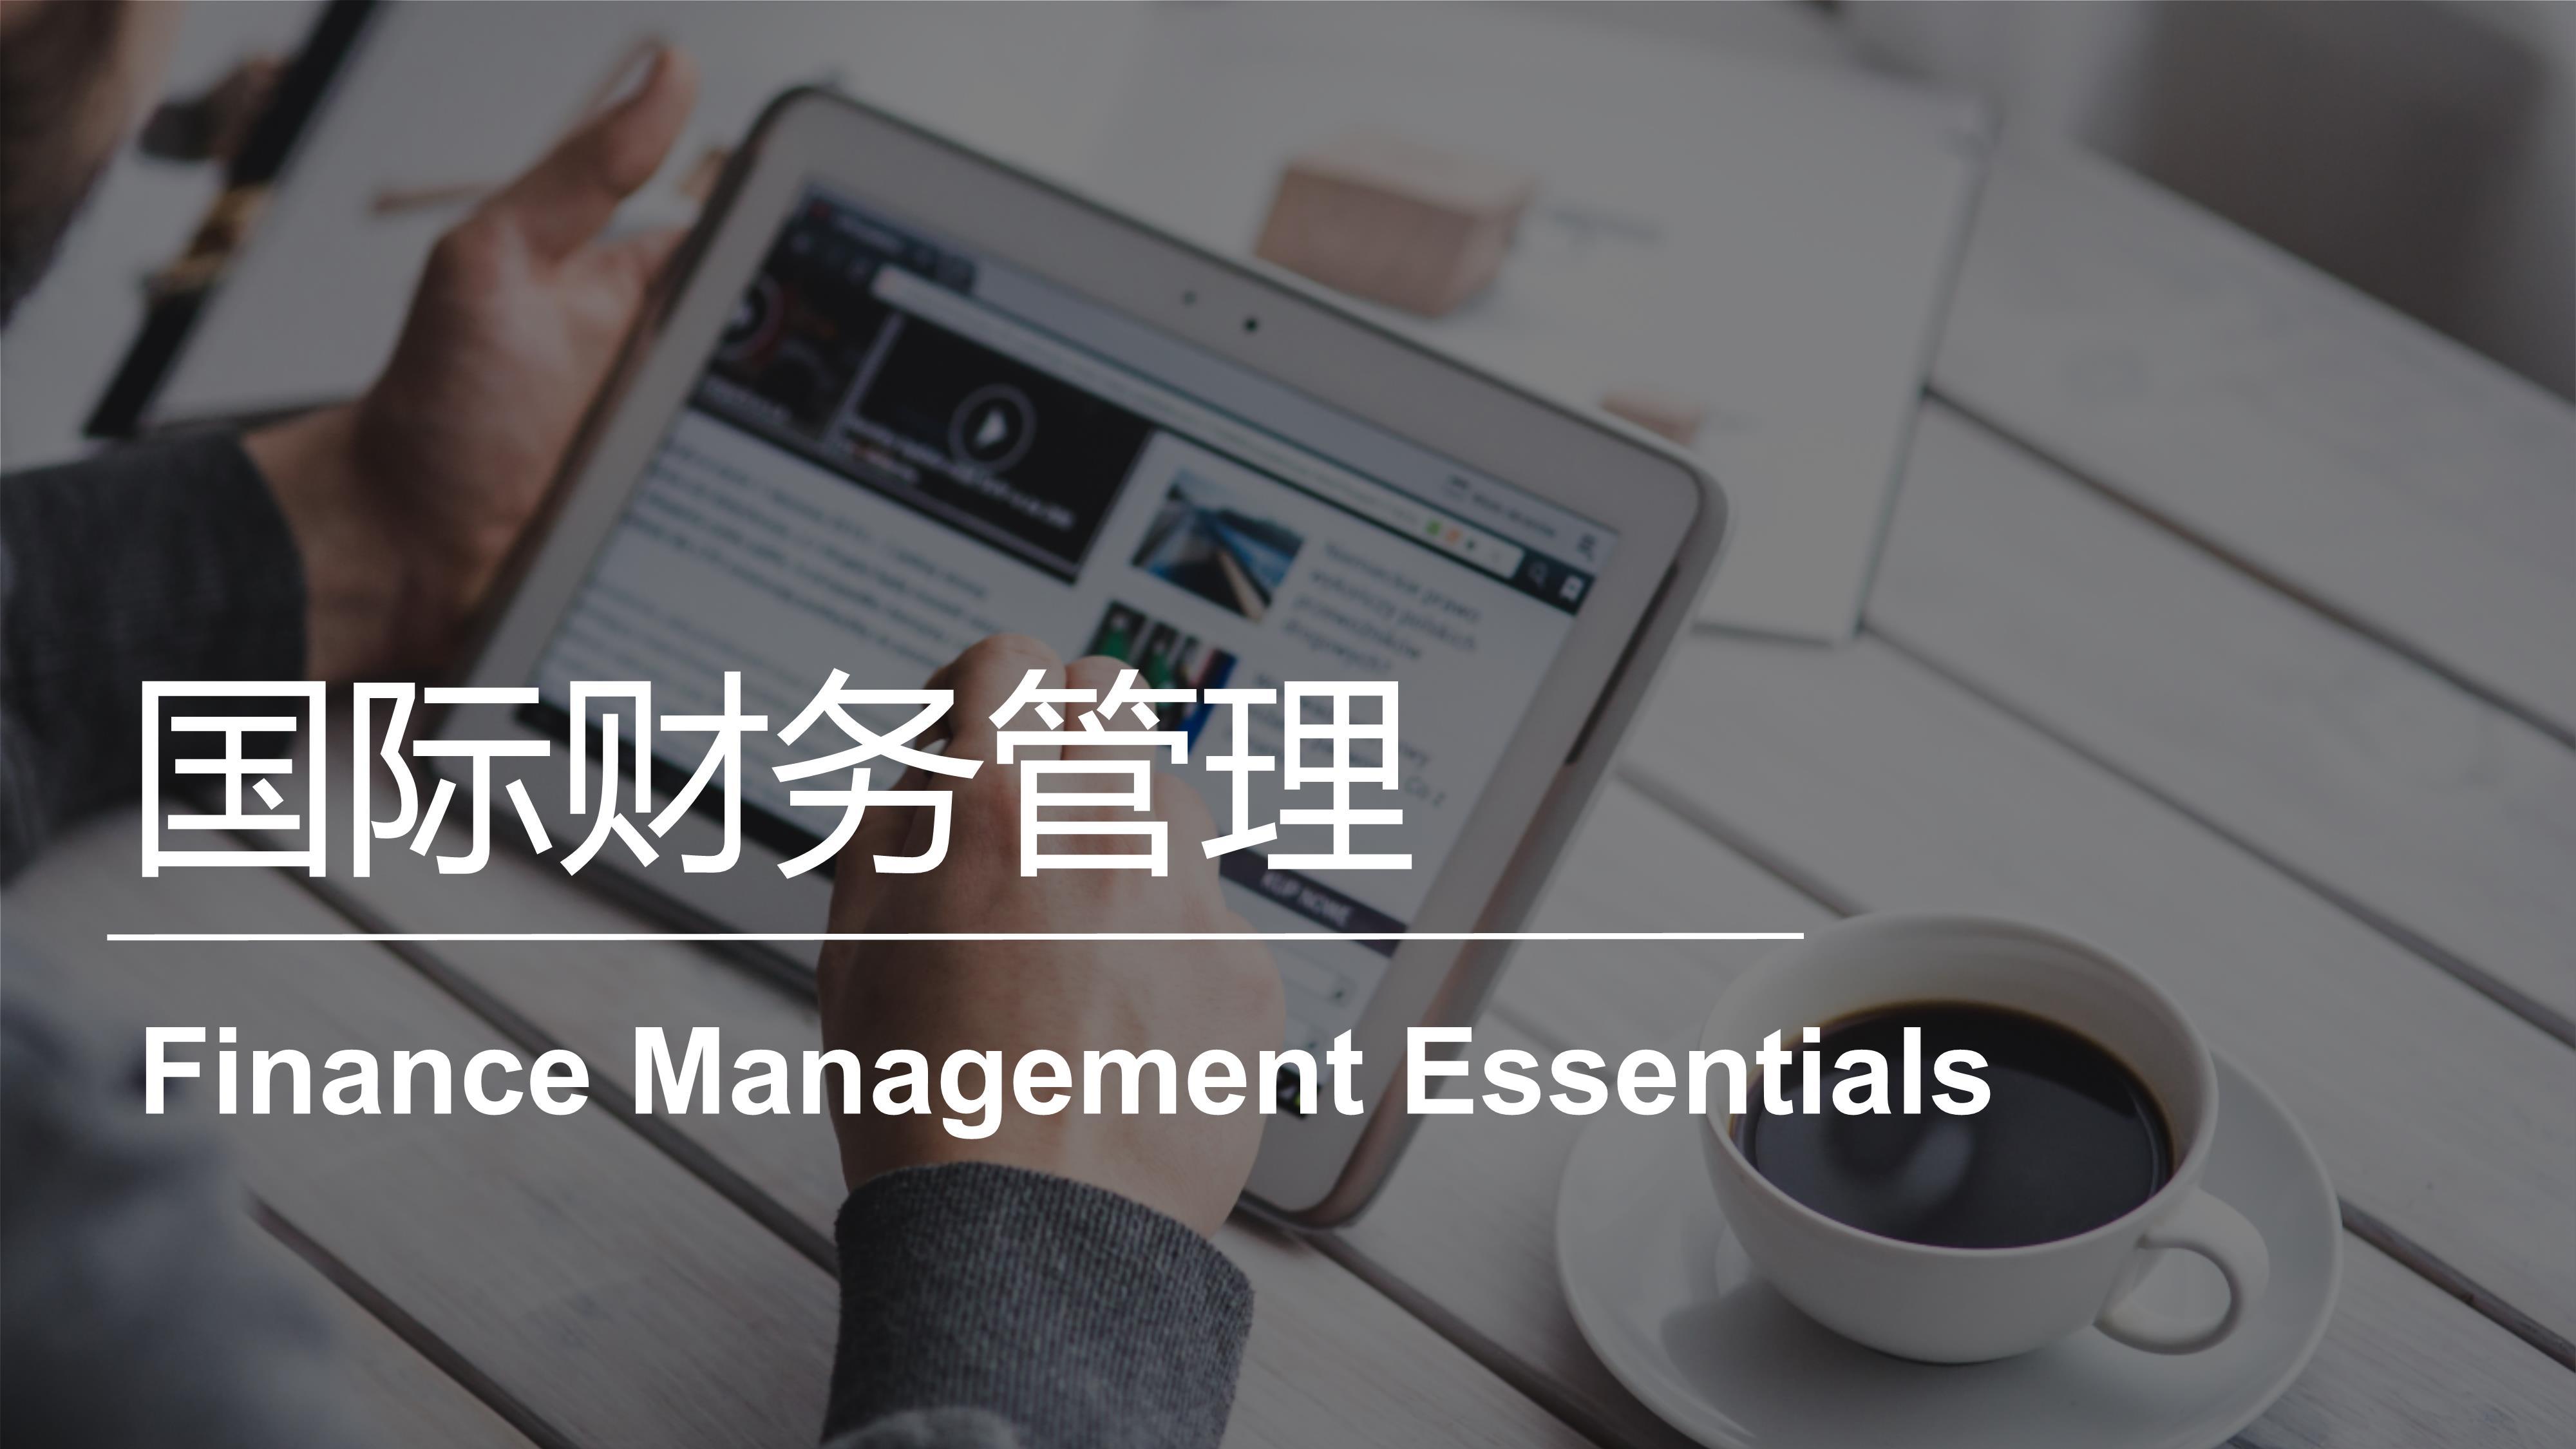 国际财务管理 | Finance Management Essentials 20221031184245